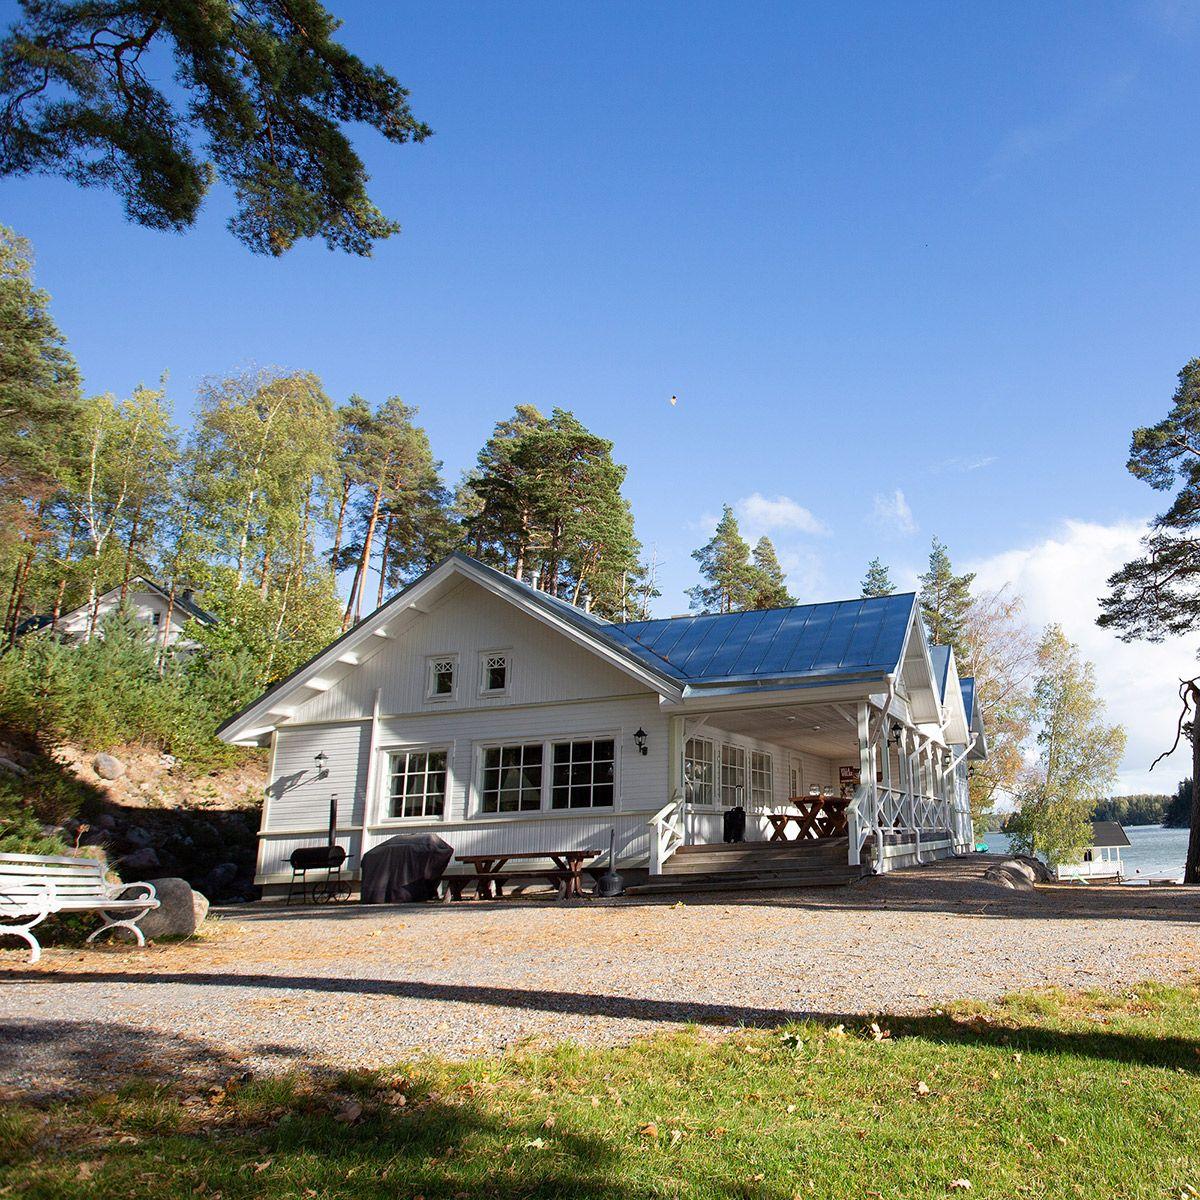 Villa Wolaxin suuri valkoinen huvila meren rannalla puiden ympäröimänä.